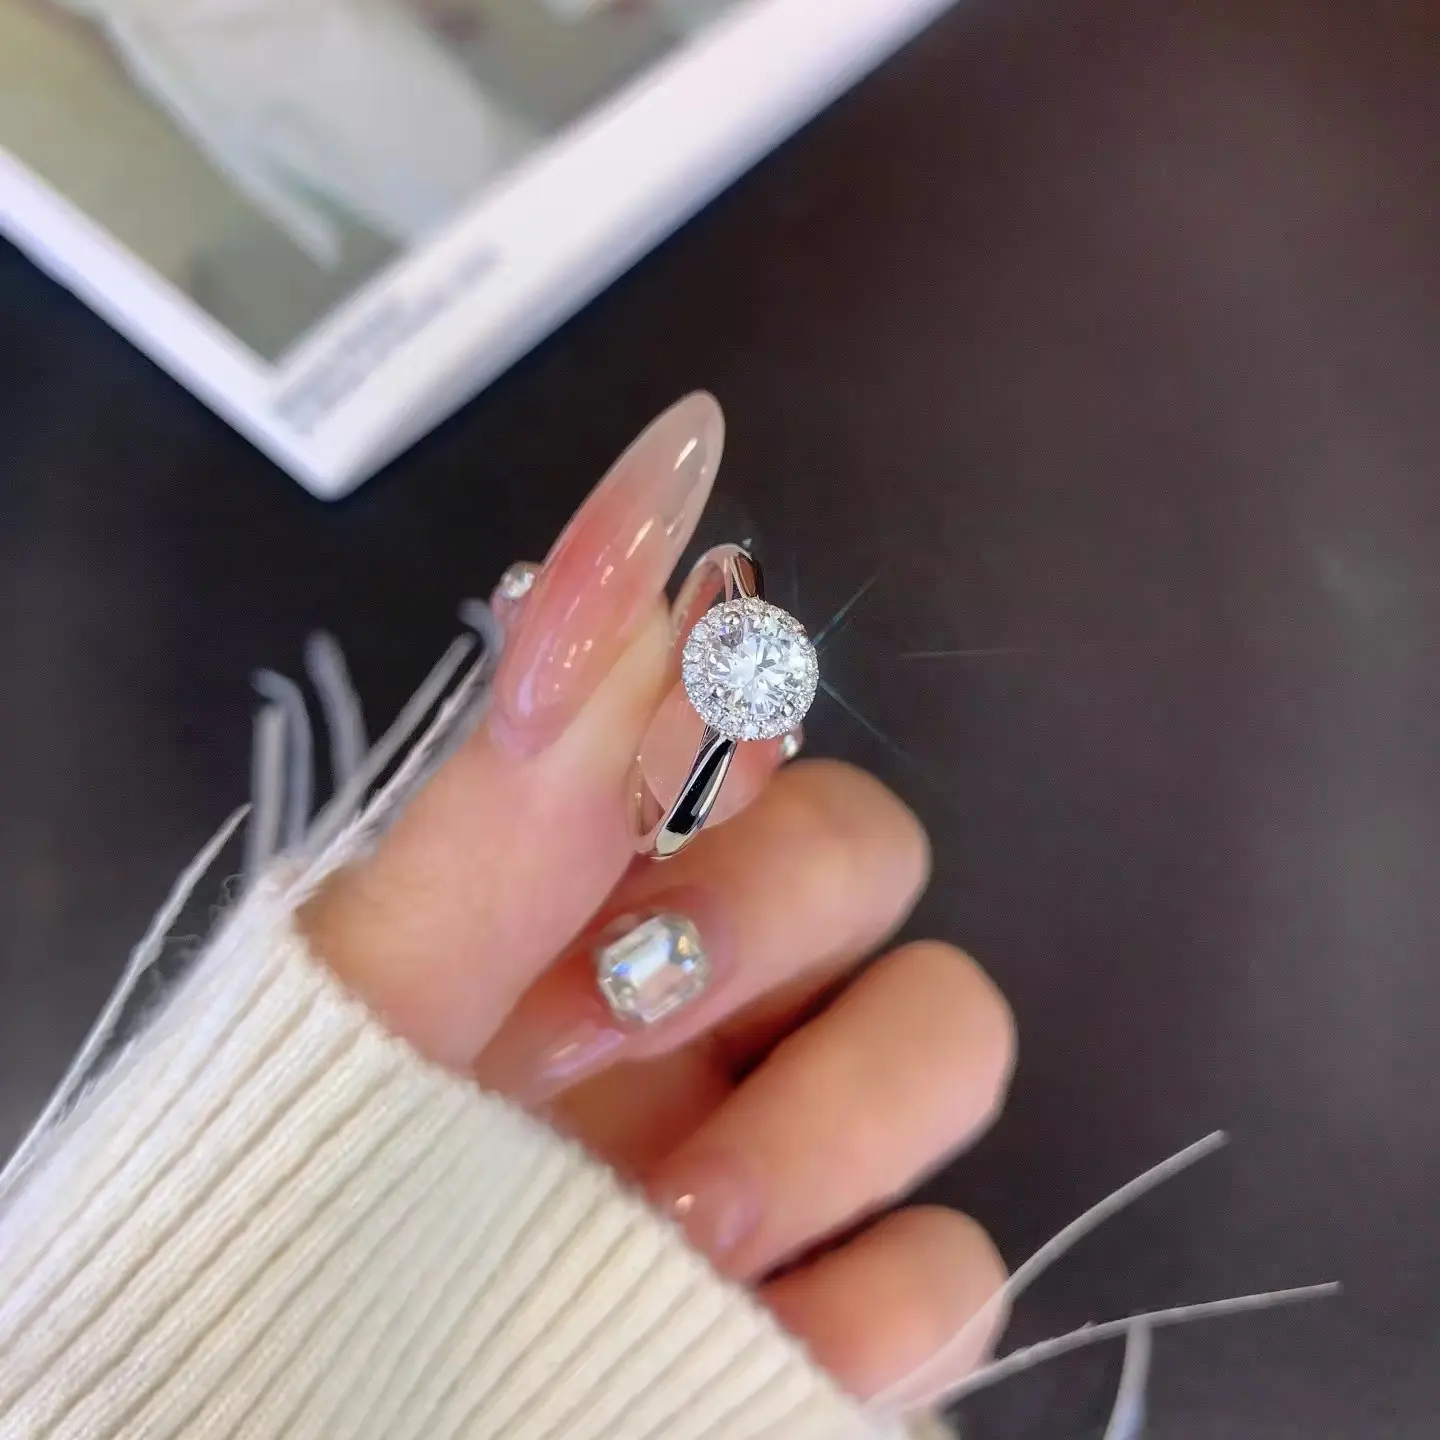 Light Luxury 18K Gold Diamond Ring 9K/14K/18K Gold Lab Grown Diamond 2.76g Engagement Wedding Ring for Women